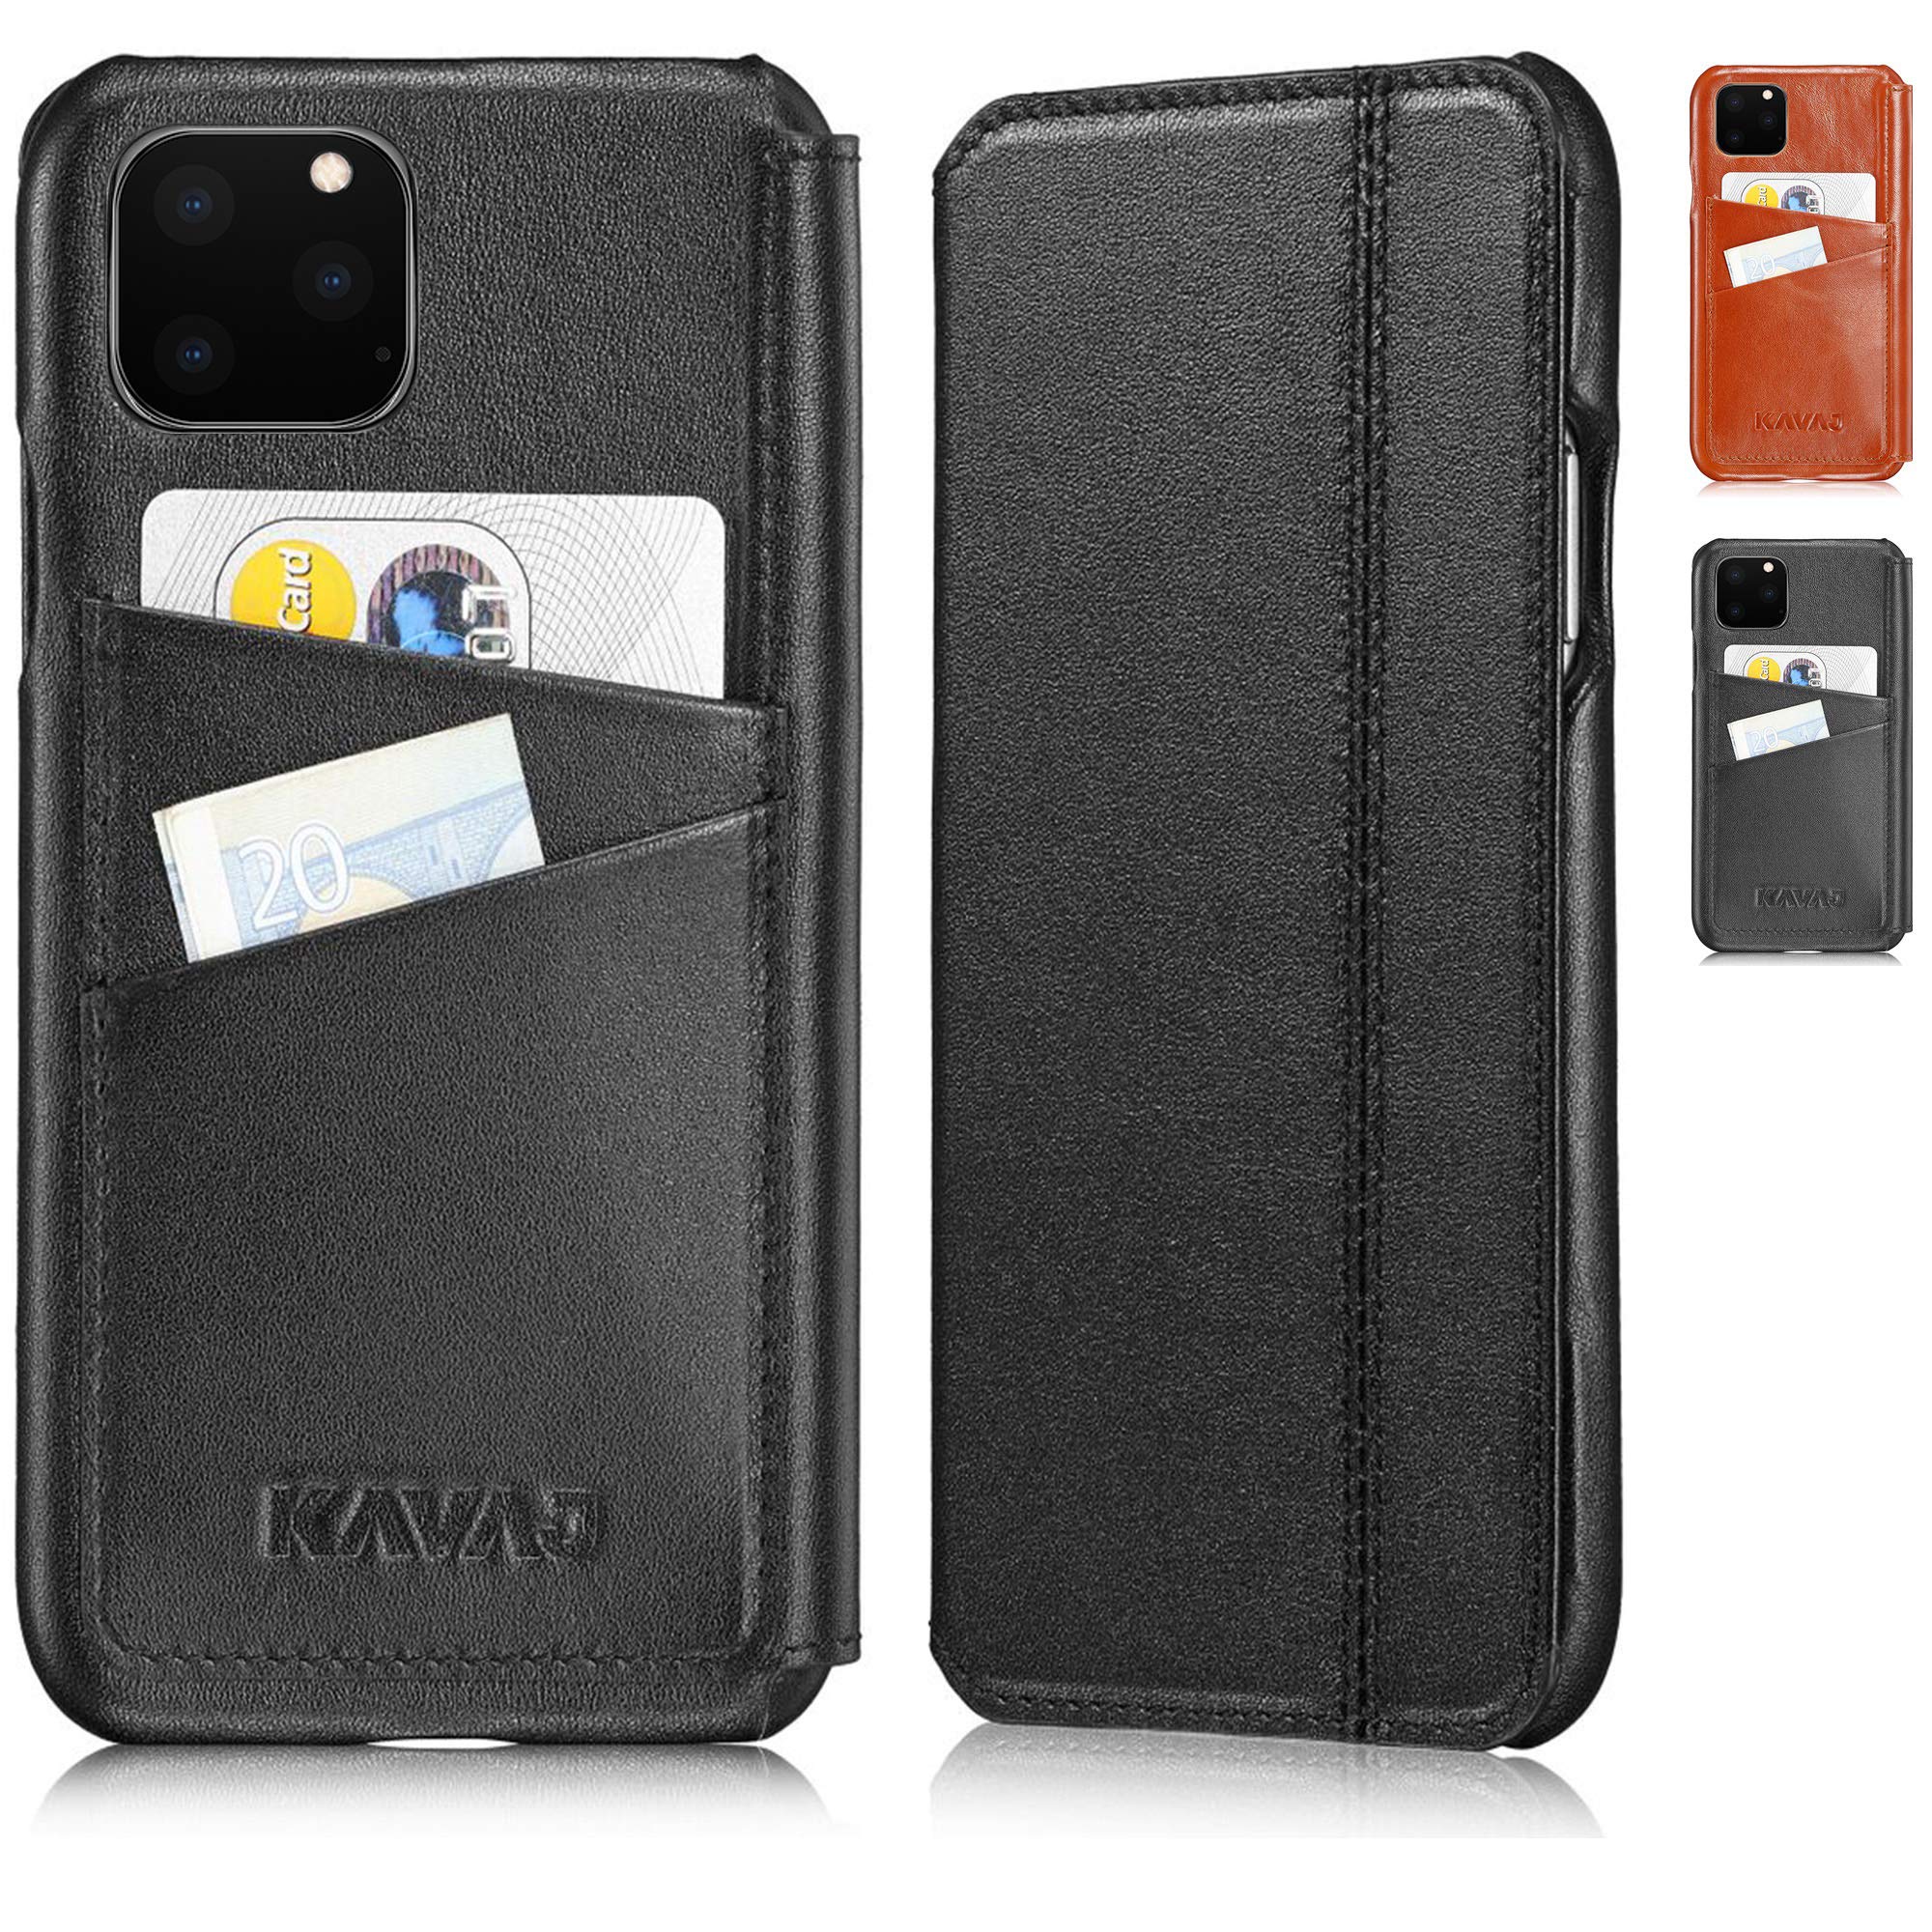 KAVAJ Hülle geeignet für Apple iPhone 11 Pro Max 6.5" Leder - Dallas - Schwarz Handyhülle Case Lederhülle mit Kartenfach